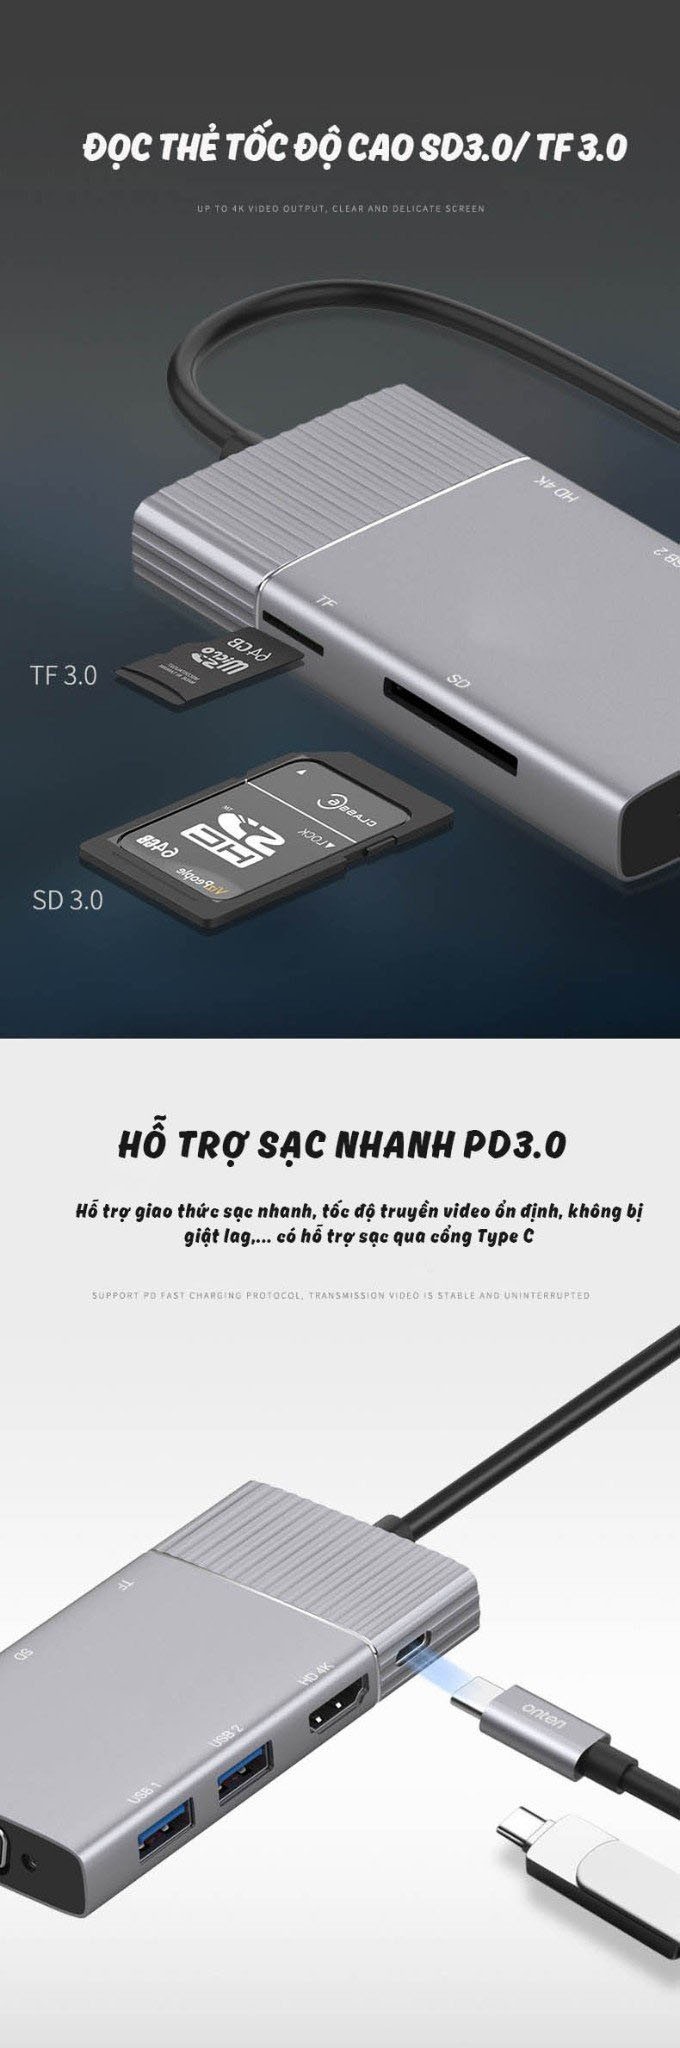 Bộ Dock chuyển Type C 6 trong 1 Aturos OT 951(HDMI 4K, VGA, HUB USB, khe thẻ nhớ SDTF,cổng sạc PD)